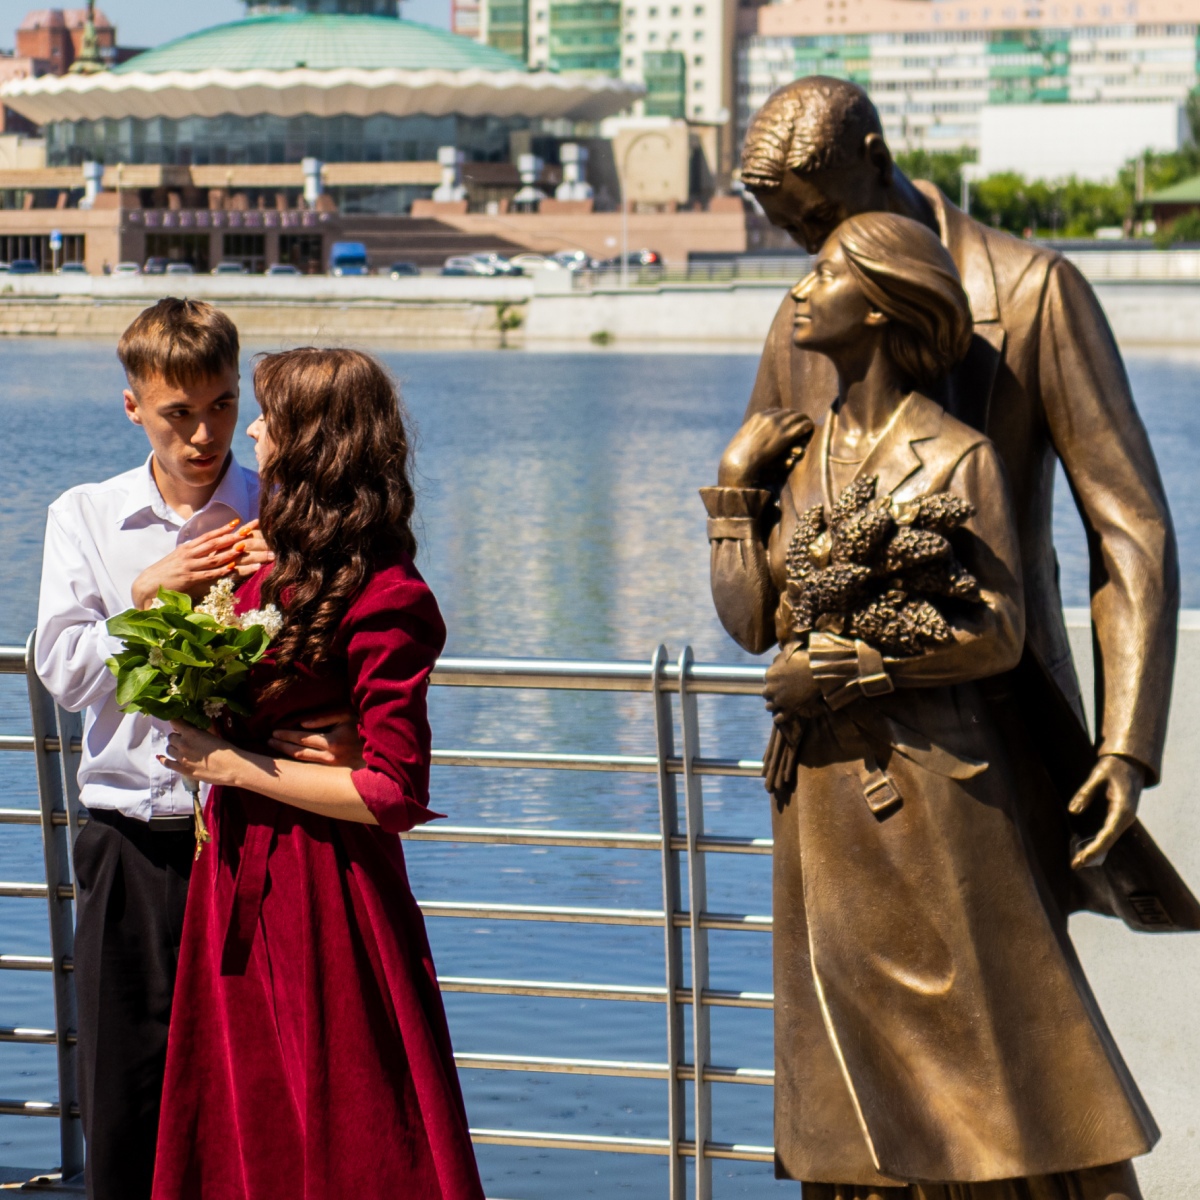 Благодаря МИДиС на Набережной появилась трогательная скульптура влюблённых